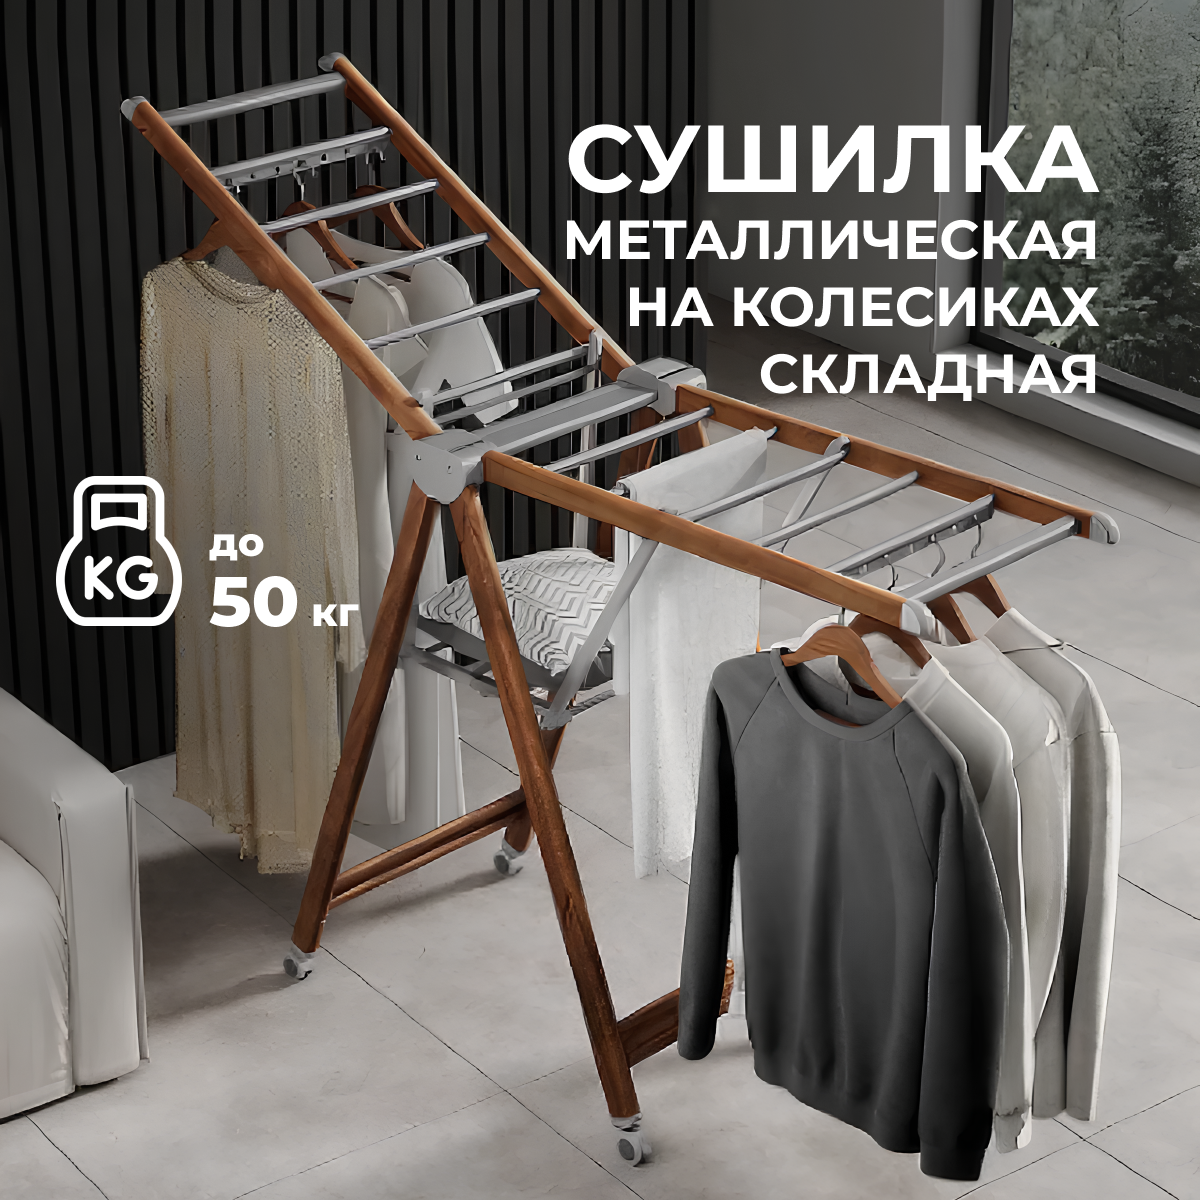 Большая металлическая складная напольная сушилка для белья и одежды на колесиках на балкон